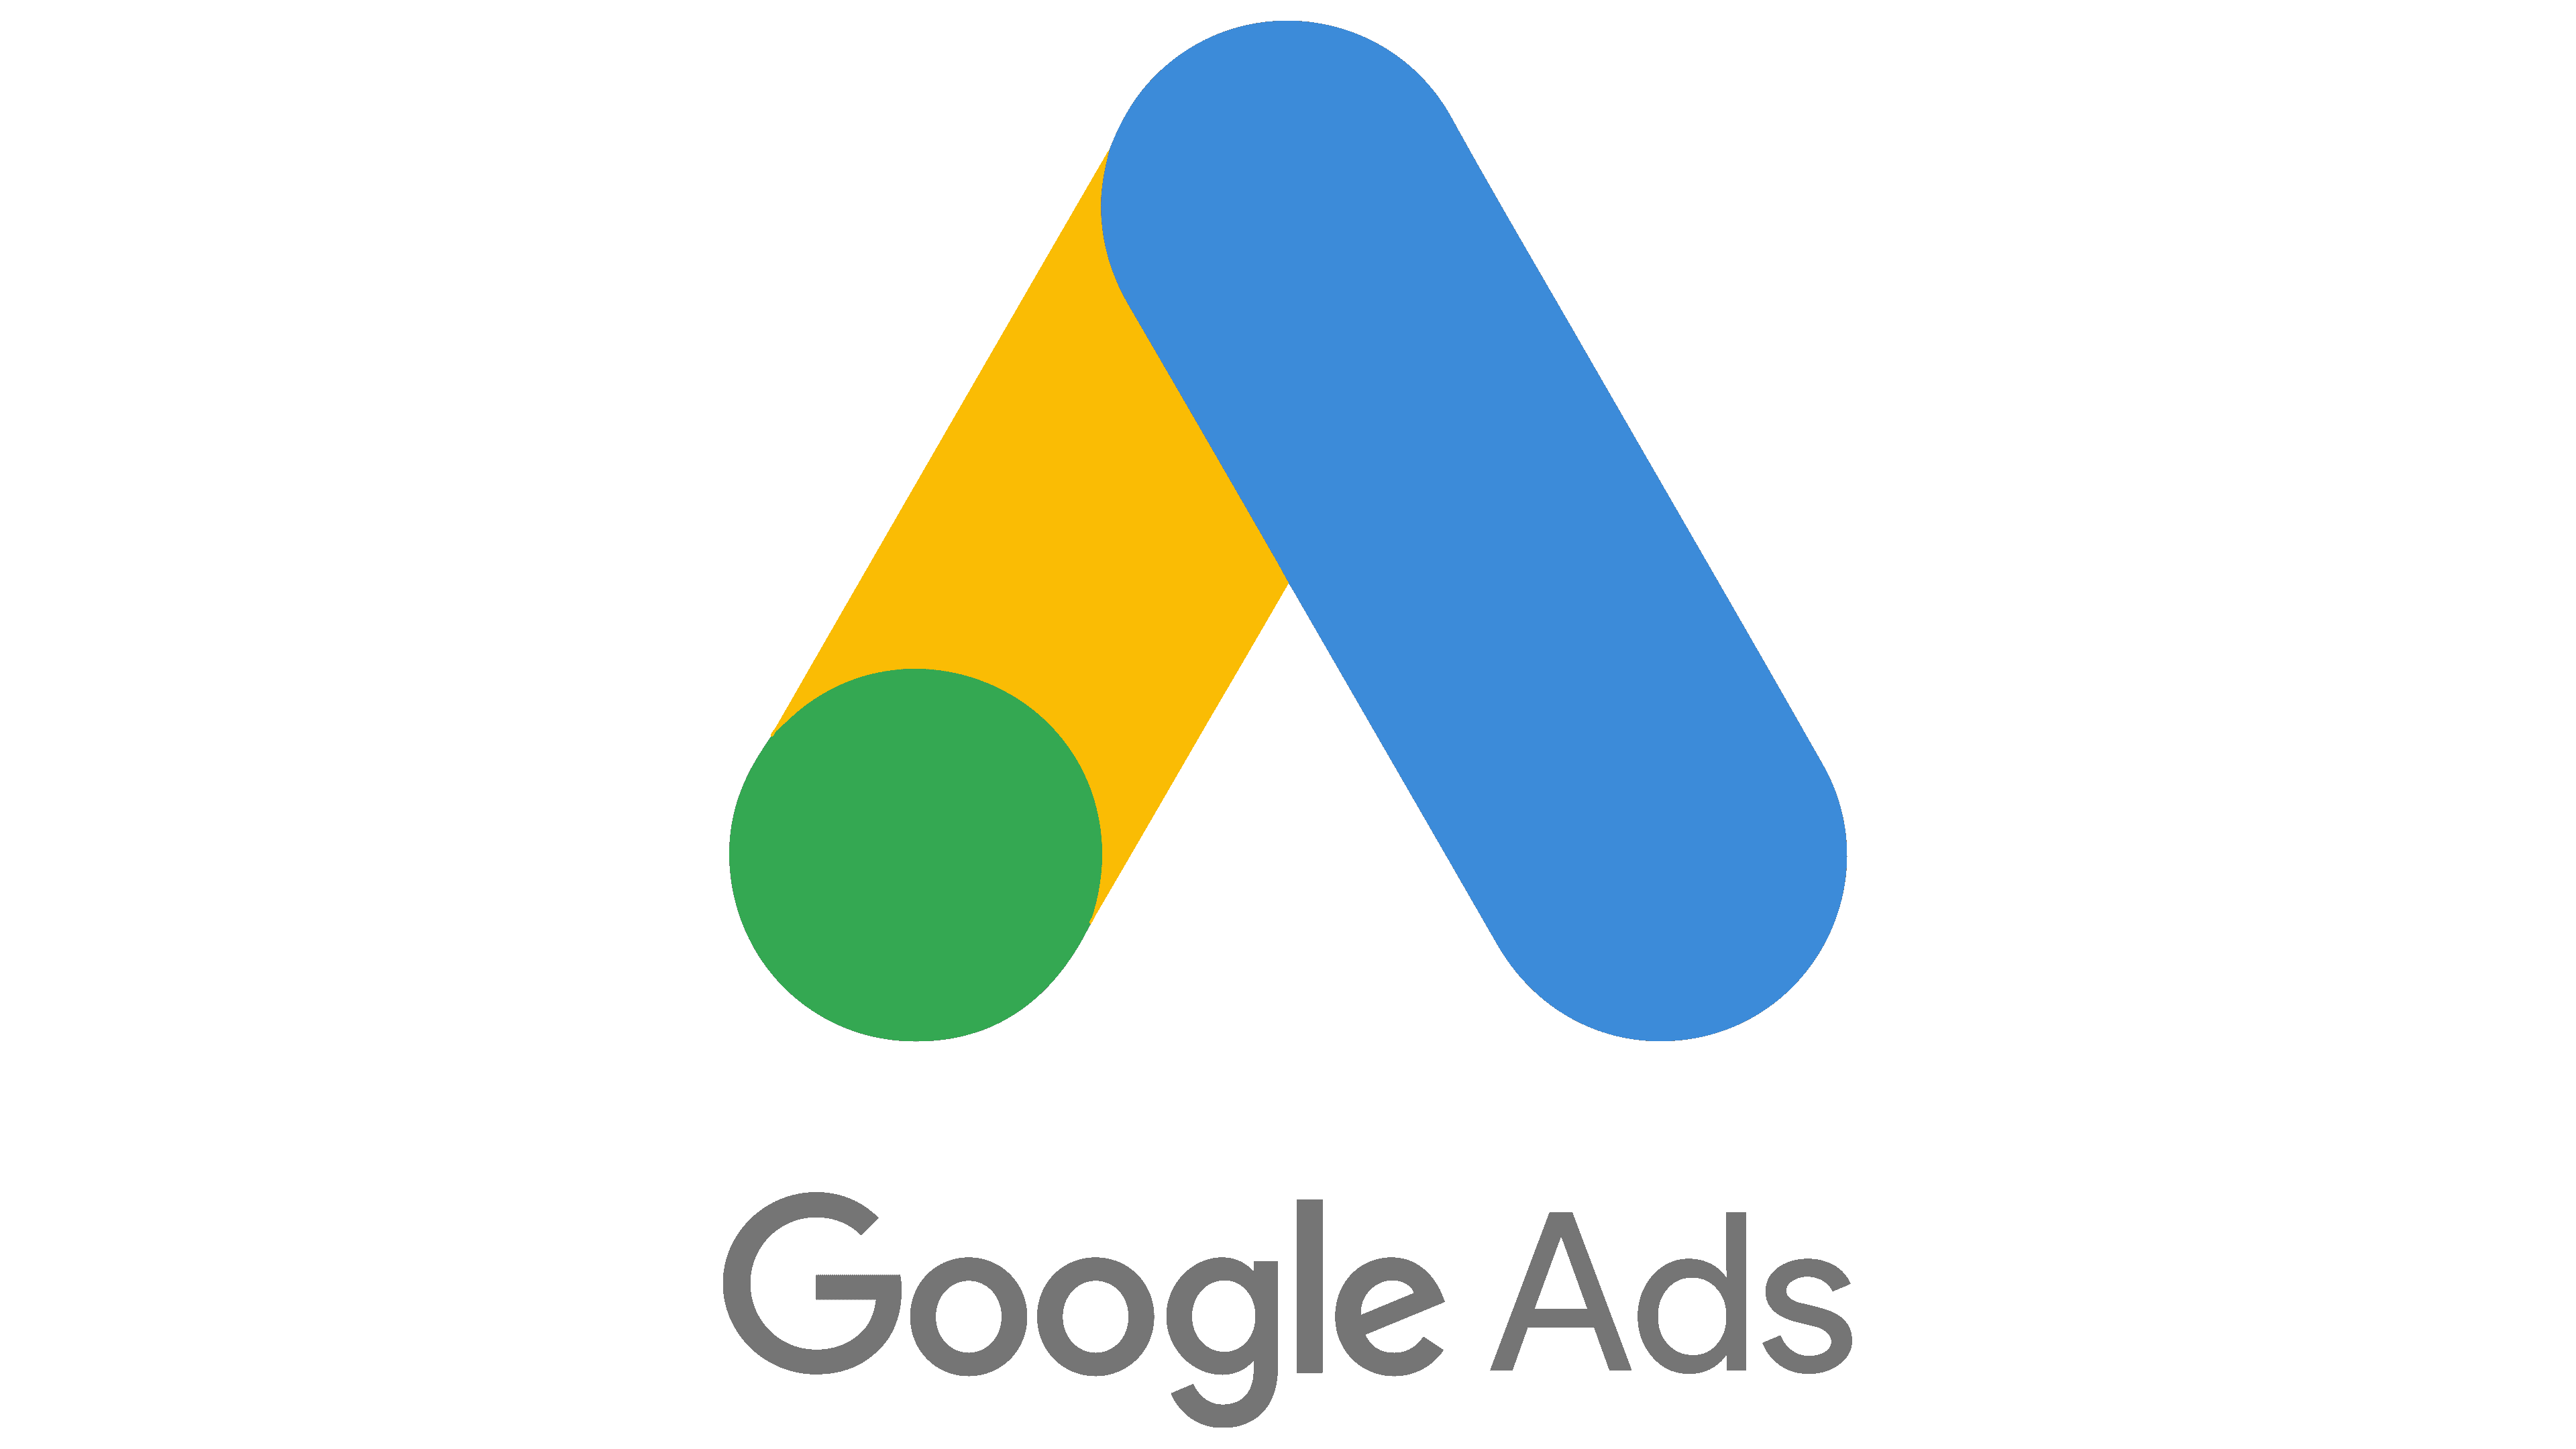 Tìm hiểu về google ads logo và cách sử dụng hiệu quả